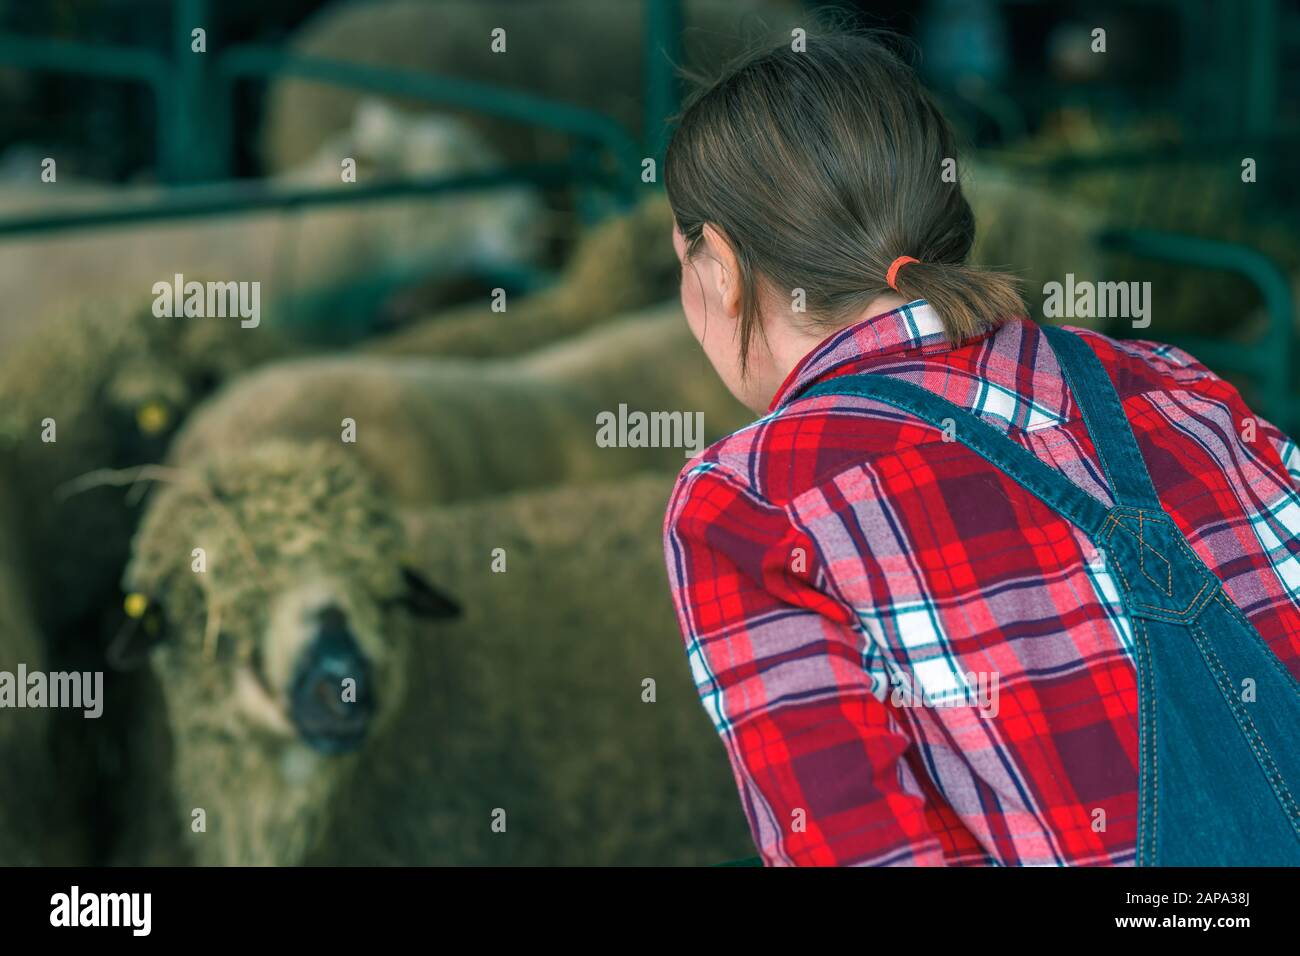 Weibliche Bäuerin bei Schafaufziehen und Züchtungsbetrieb, die auf Herde von Haustieren aufprüft Stockfoto